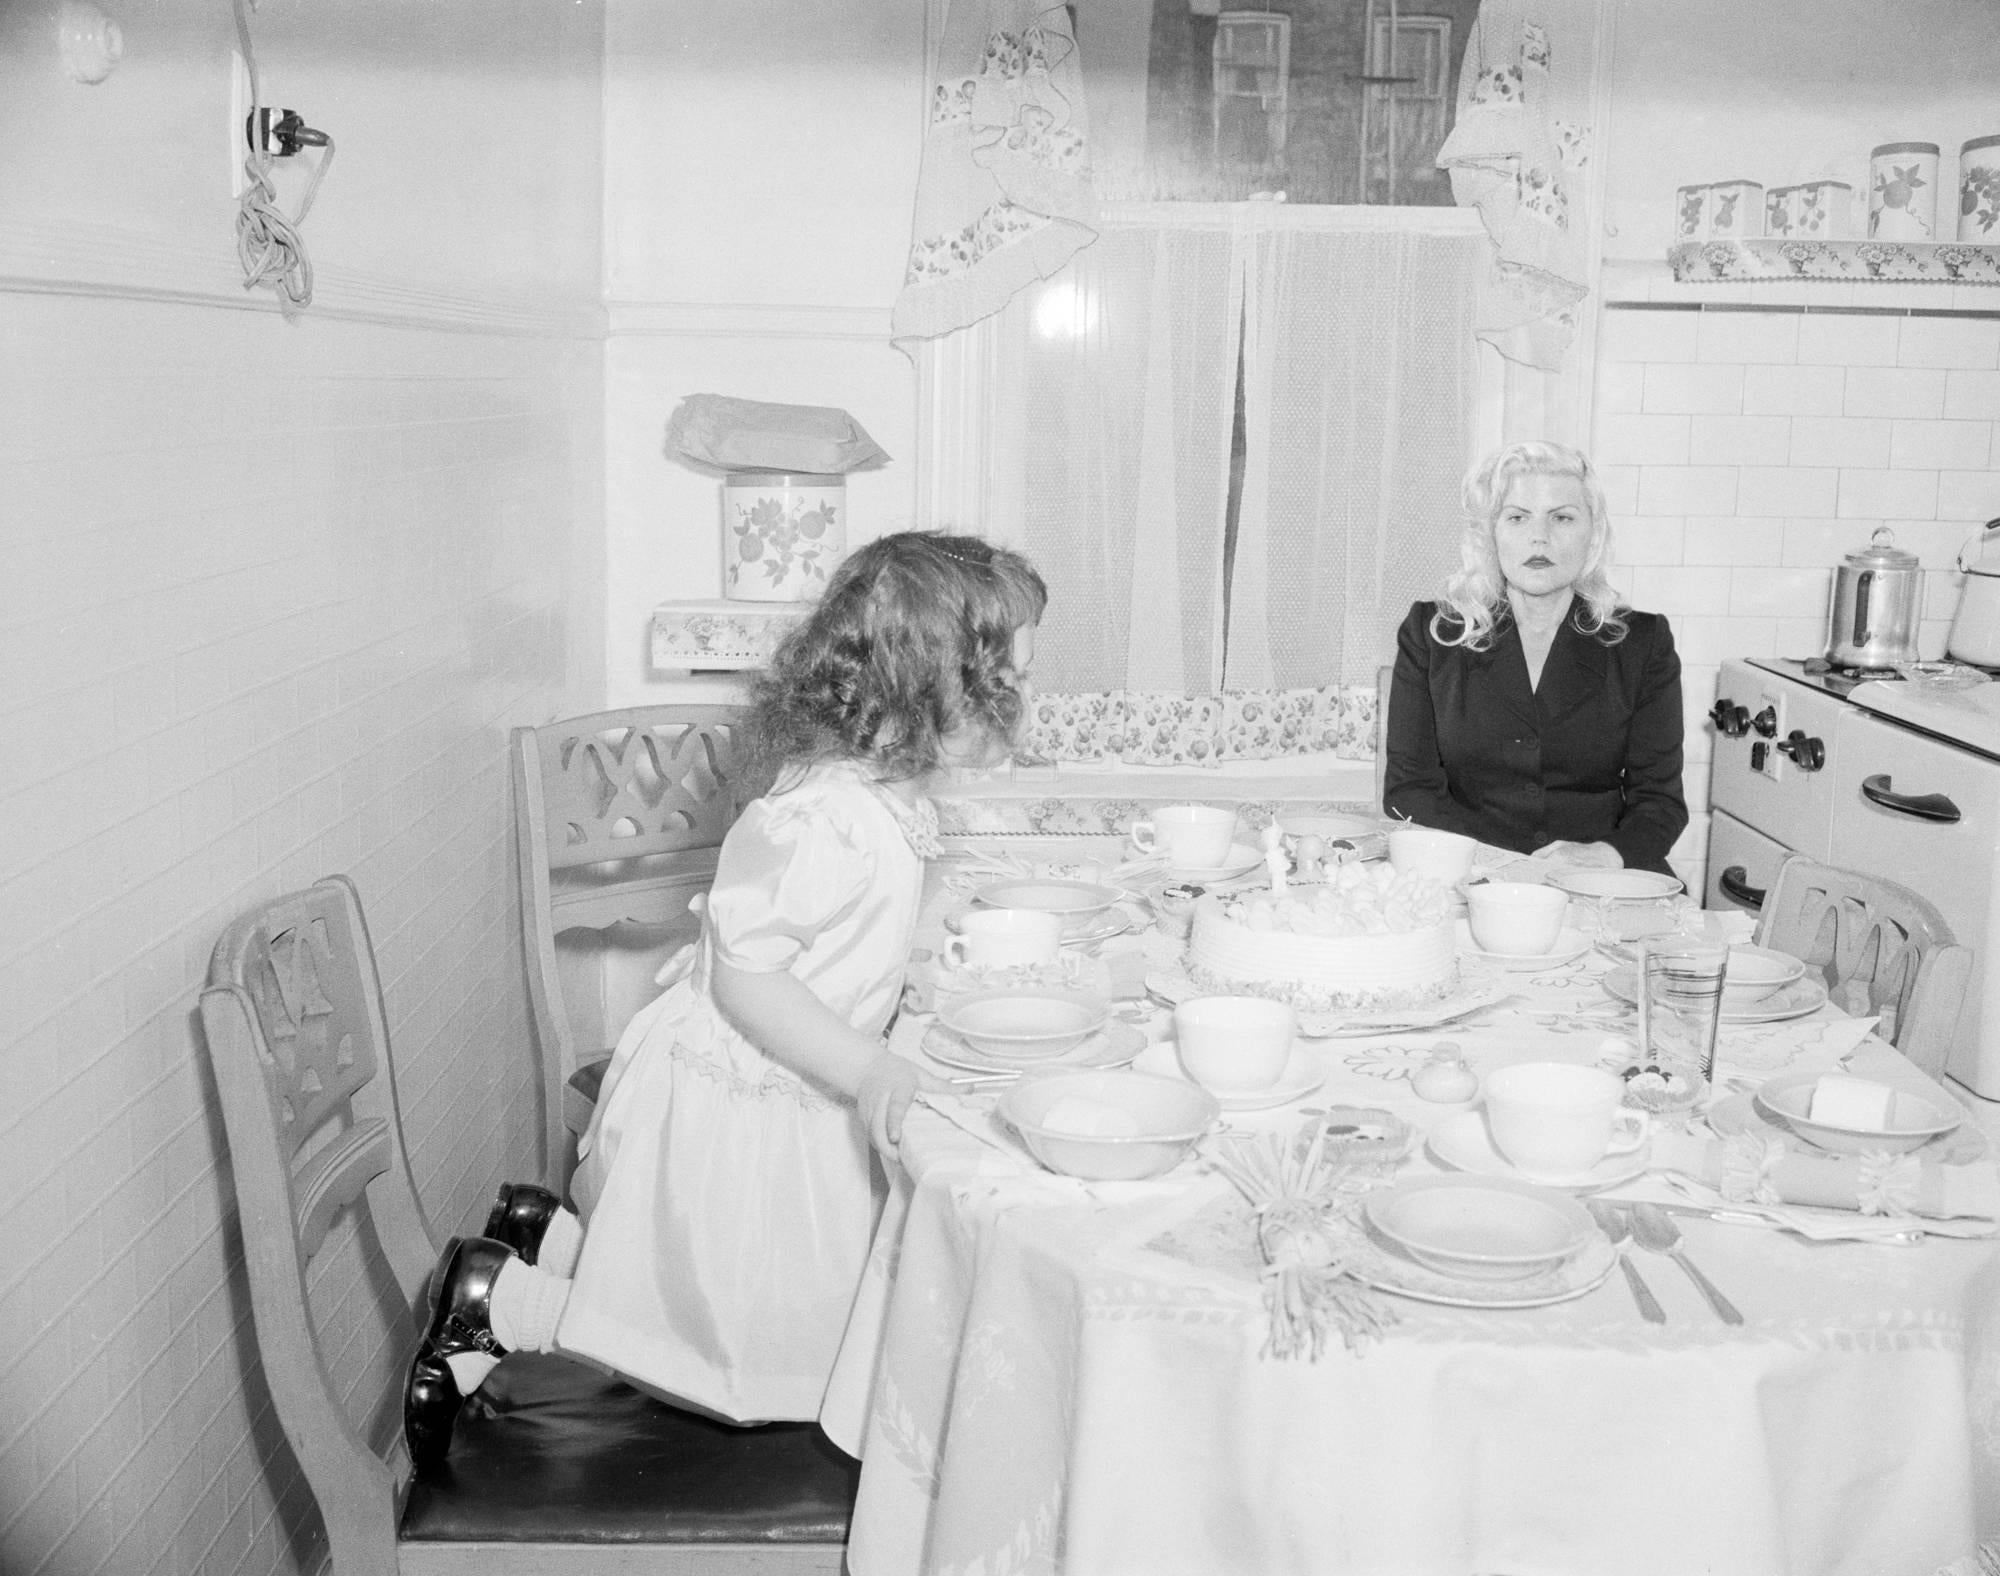 Jennifer Greenburg Black and White Photograph - I've always preferred my own birthday, 2013